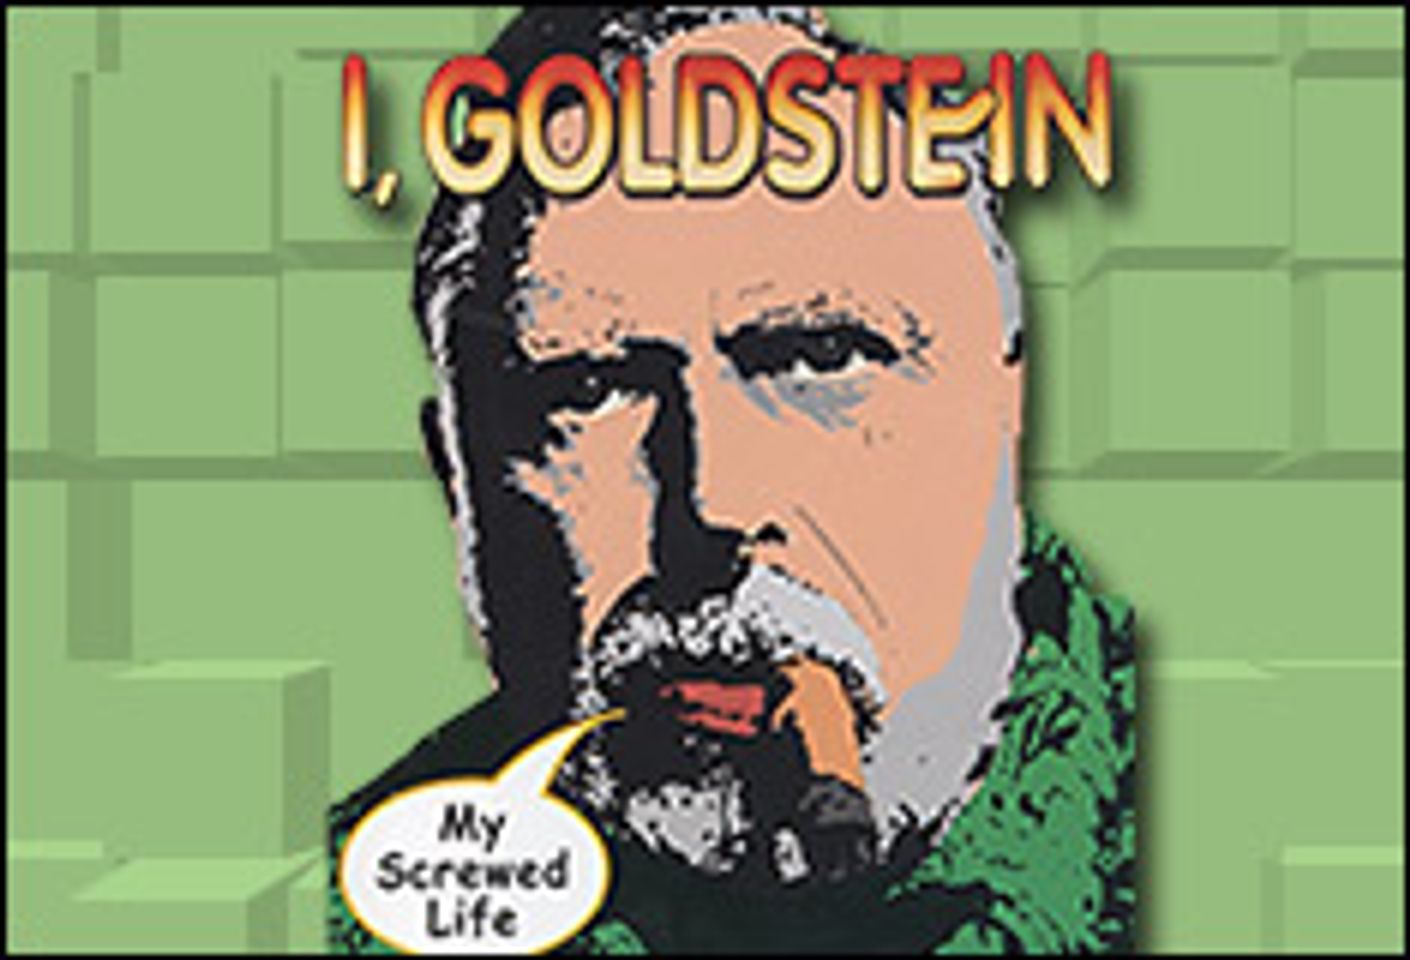 AVN Review: 'I, Goldstein'